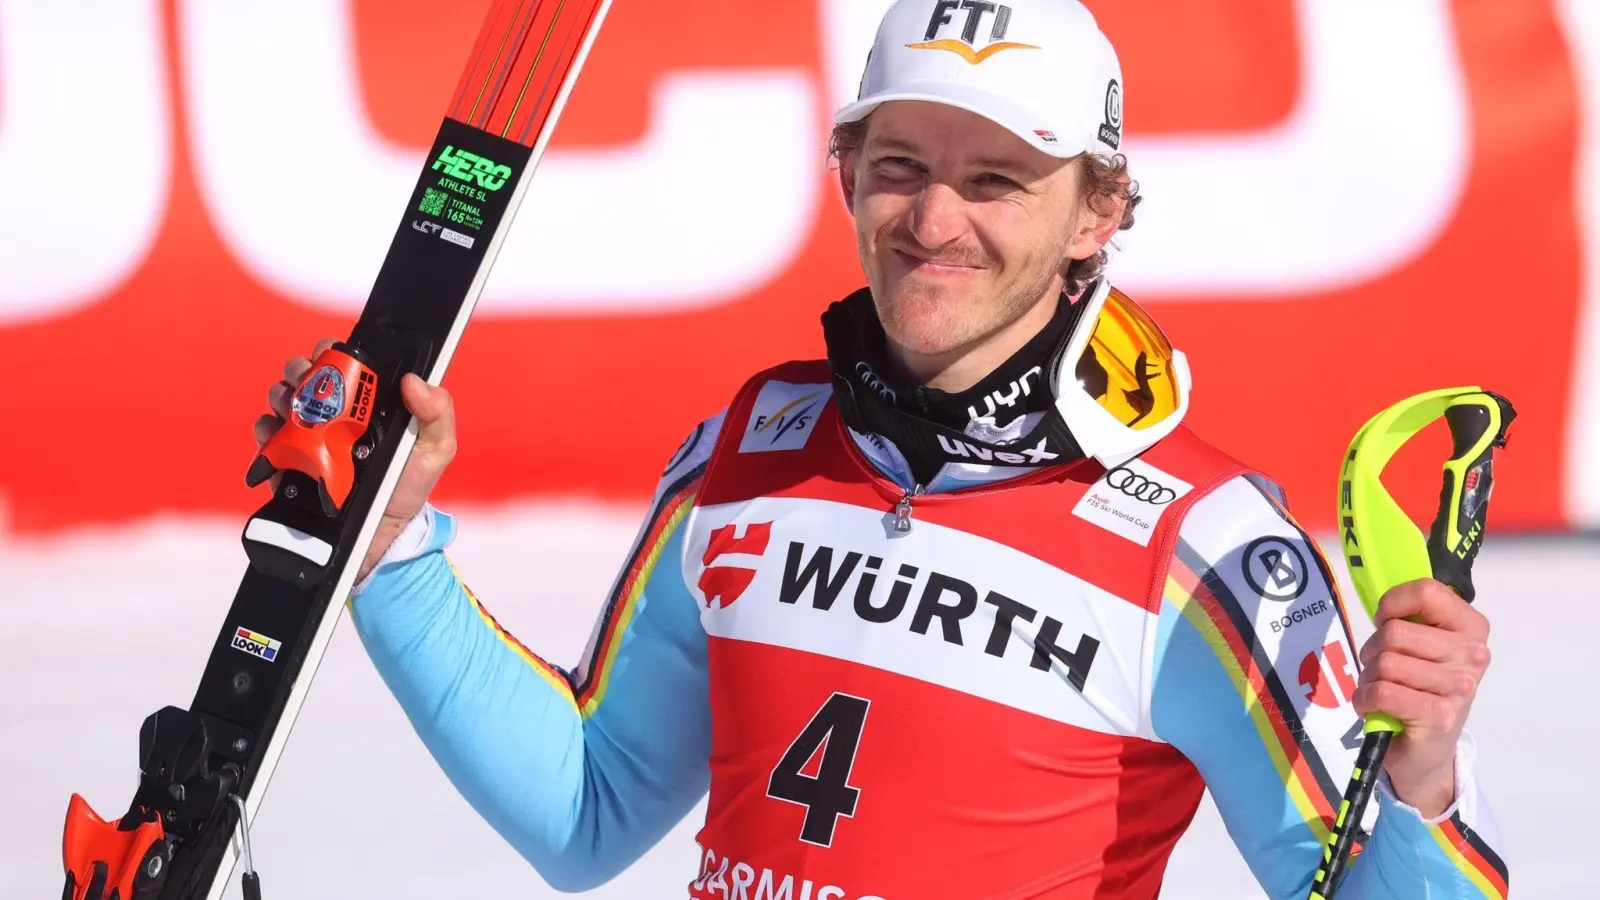 Der deutsche Slalom-Spezialist Linus Straßer betont die Bedeutung des Skisports. (Foto: Karl-Josef Hildenbrand/Deutsche Presse-Agentur GmbH/dpa)